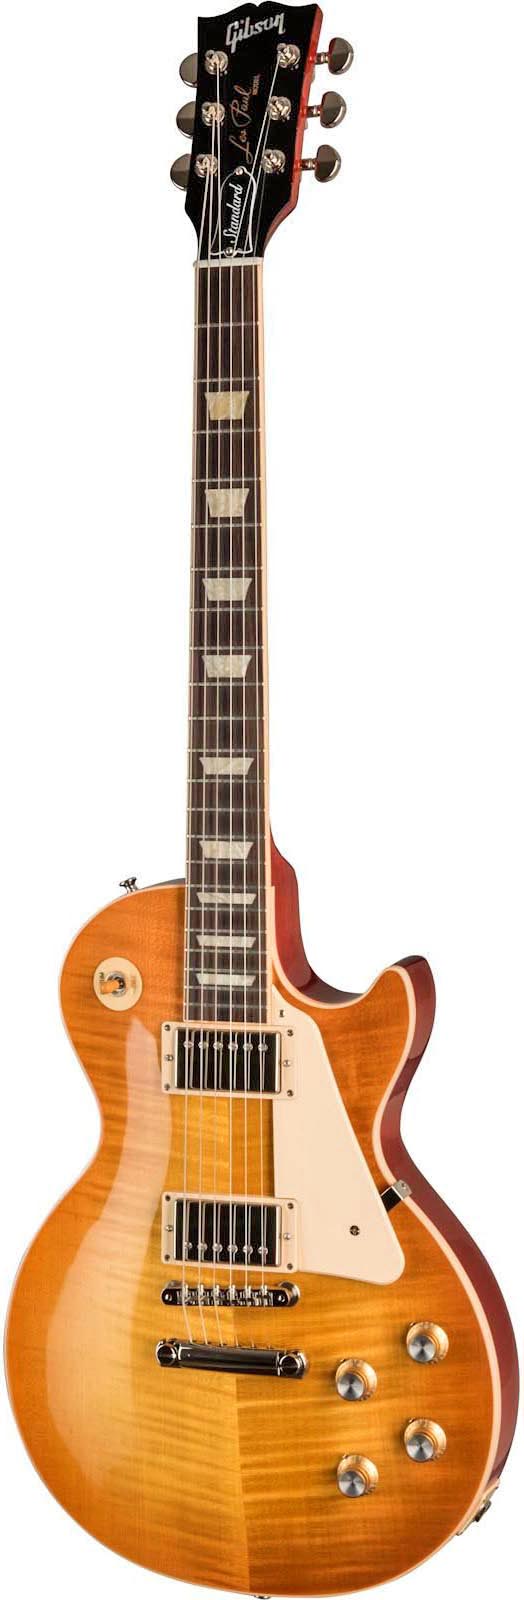 Gibson Les Paul Standard 60s Electric Guitar - Unburst